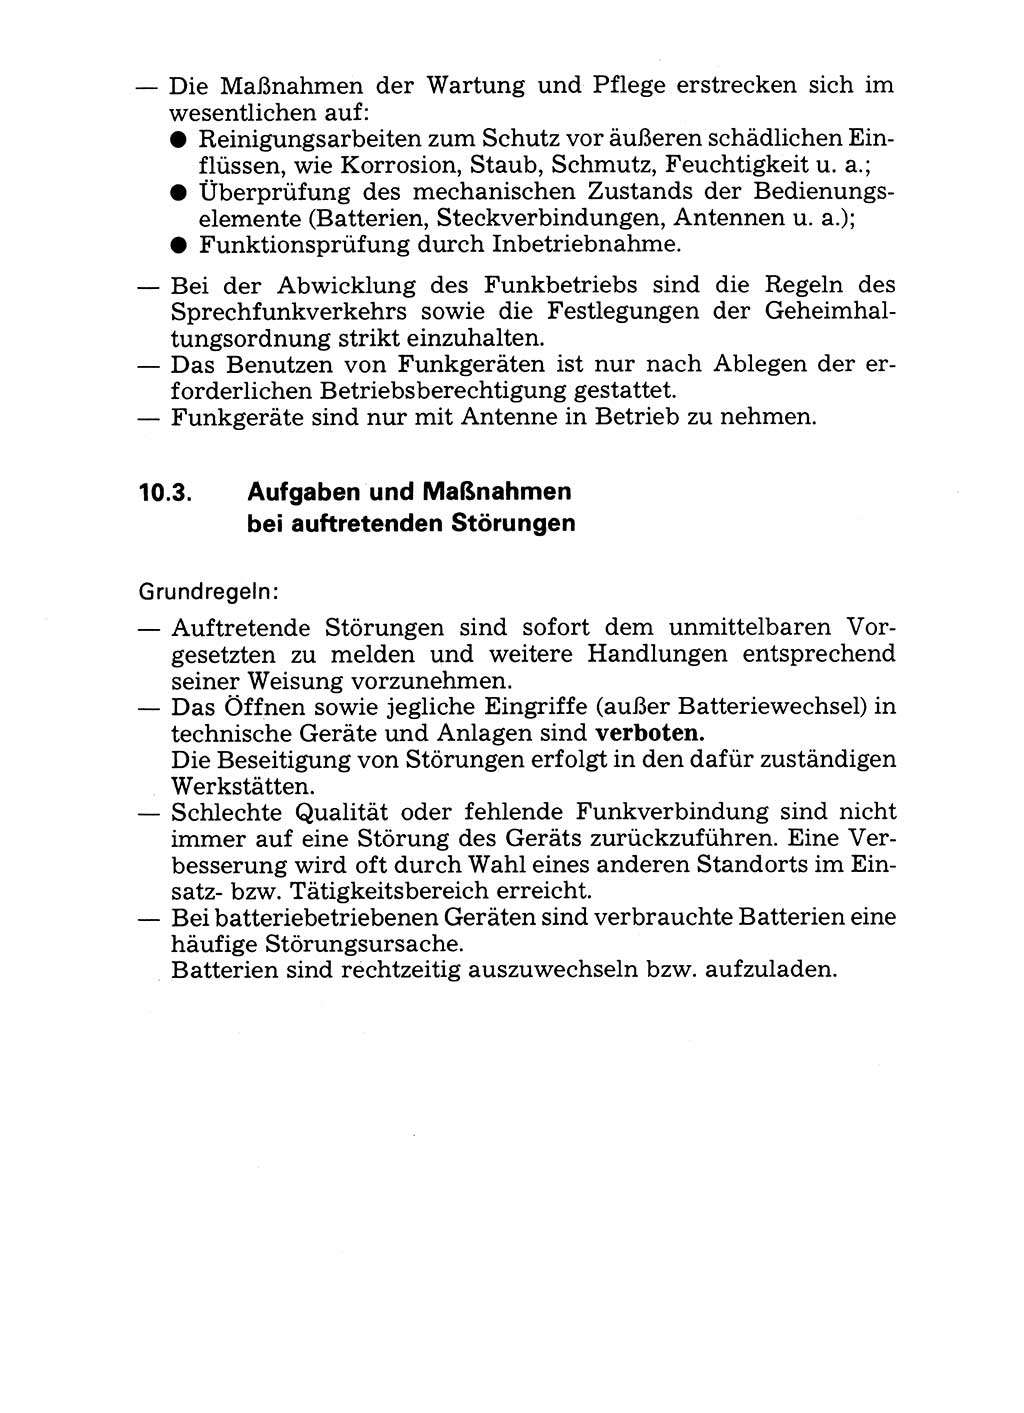 Handbuch für operative Dienste, Abteilung Strafvollzug (SV) [Ministerium des Innern (MdI) Deutsche Demokratische Republik (DDR)] 1981, Seite 137 (Hb. op. D. Abt. SV MdI DDR 1981, S. 137)